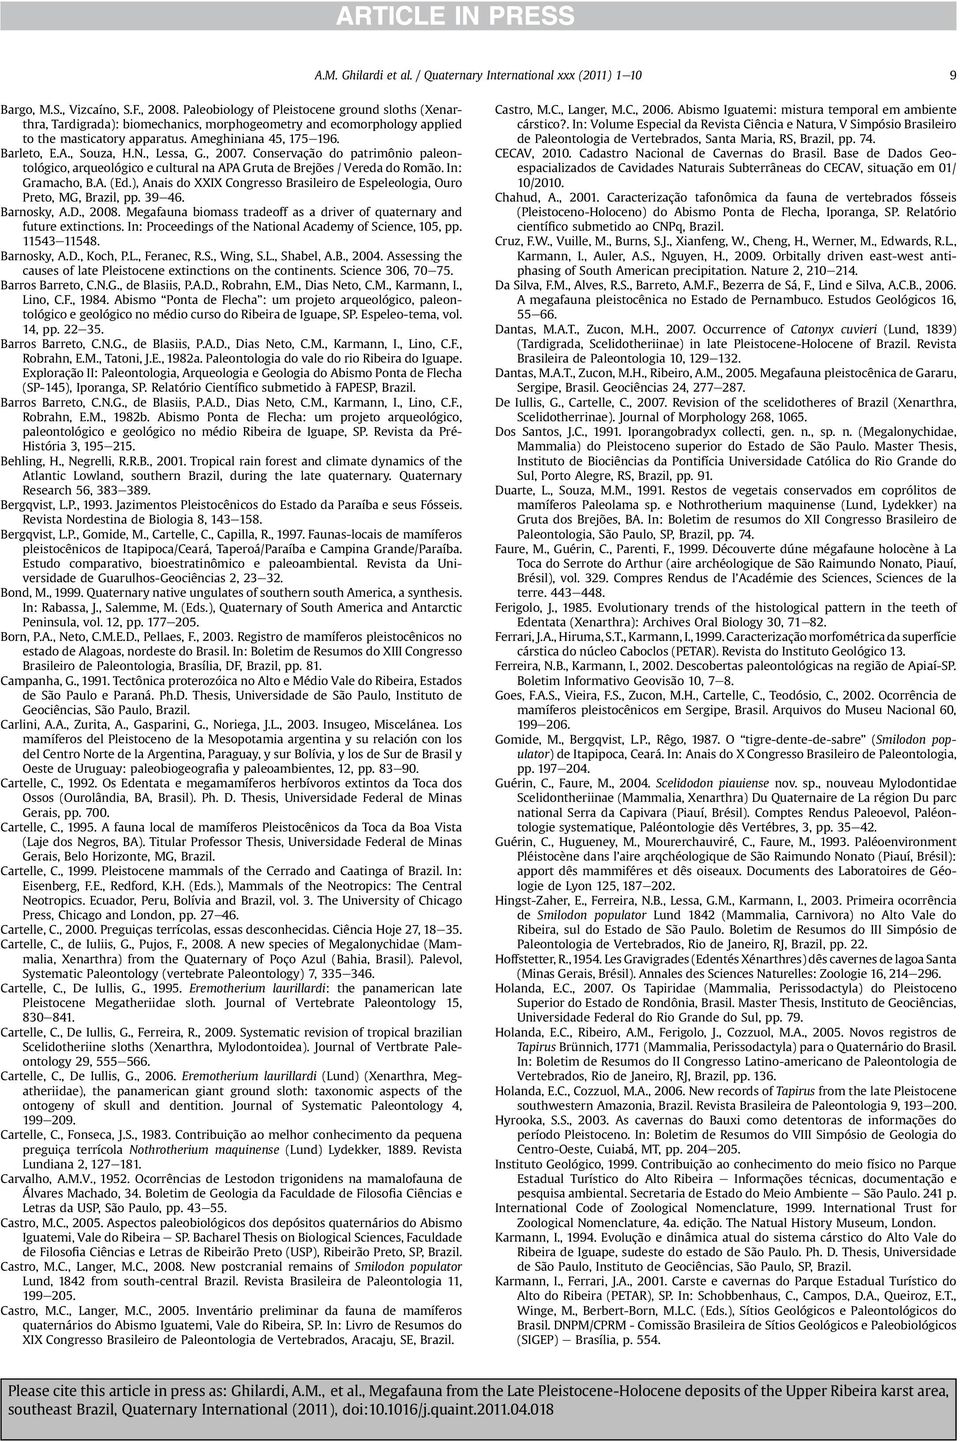 N., Lessa, G., 2007. Conservação do patrimônio paleontológico, arqueológico e cultural na APA Gruta de Brejões / Vereda do Romão. In: Gramacho, B.A. (Ed.